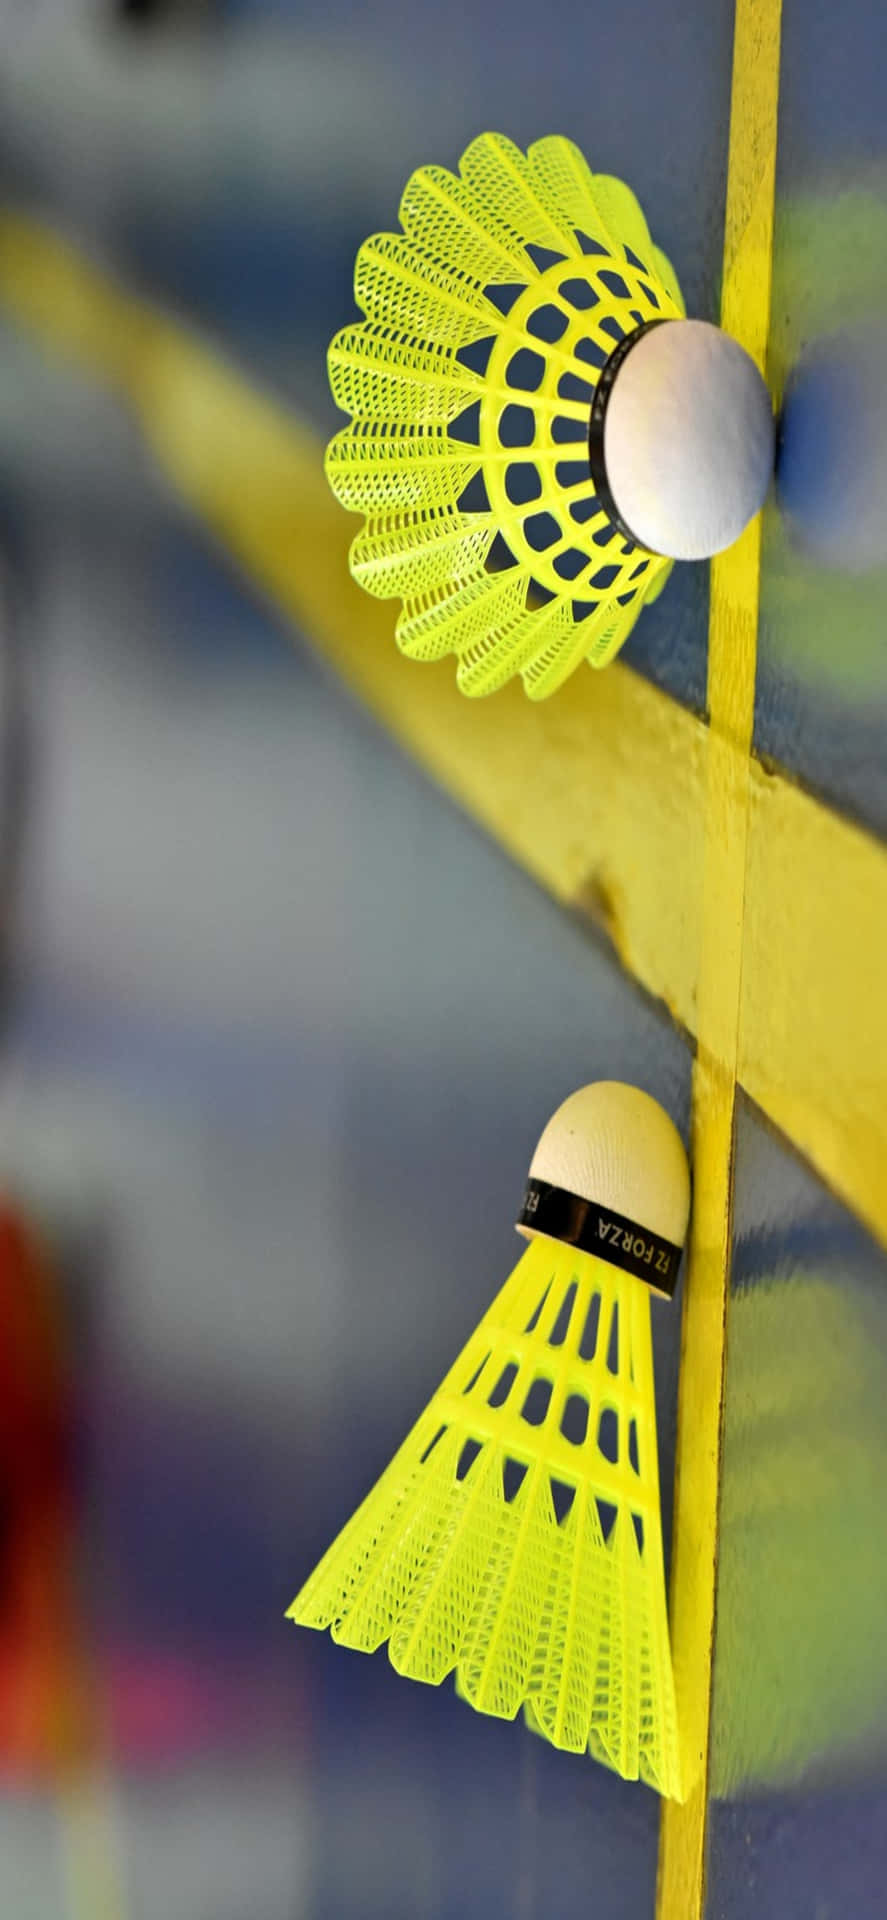 Festeggiamentidopo Una Partita Di Badminton Mozzafiato